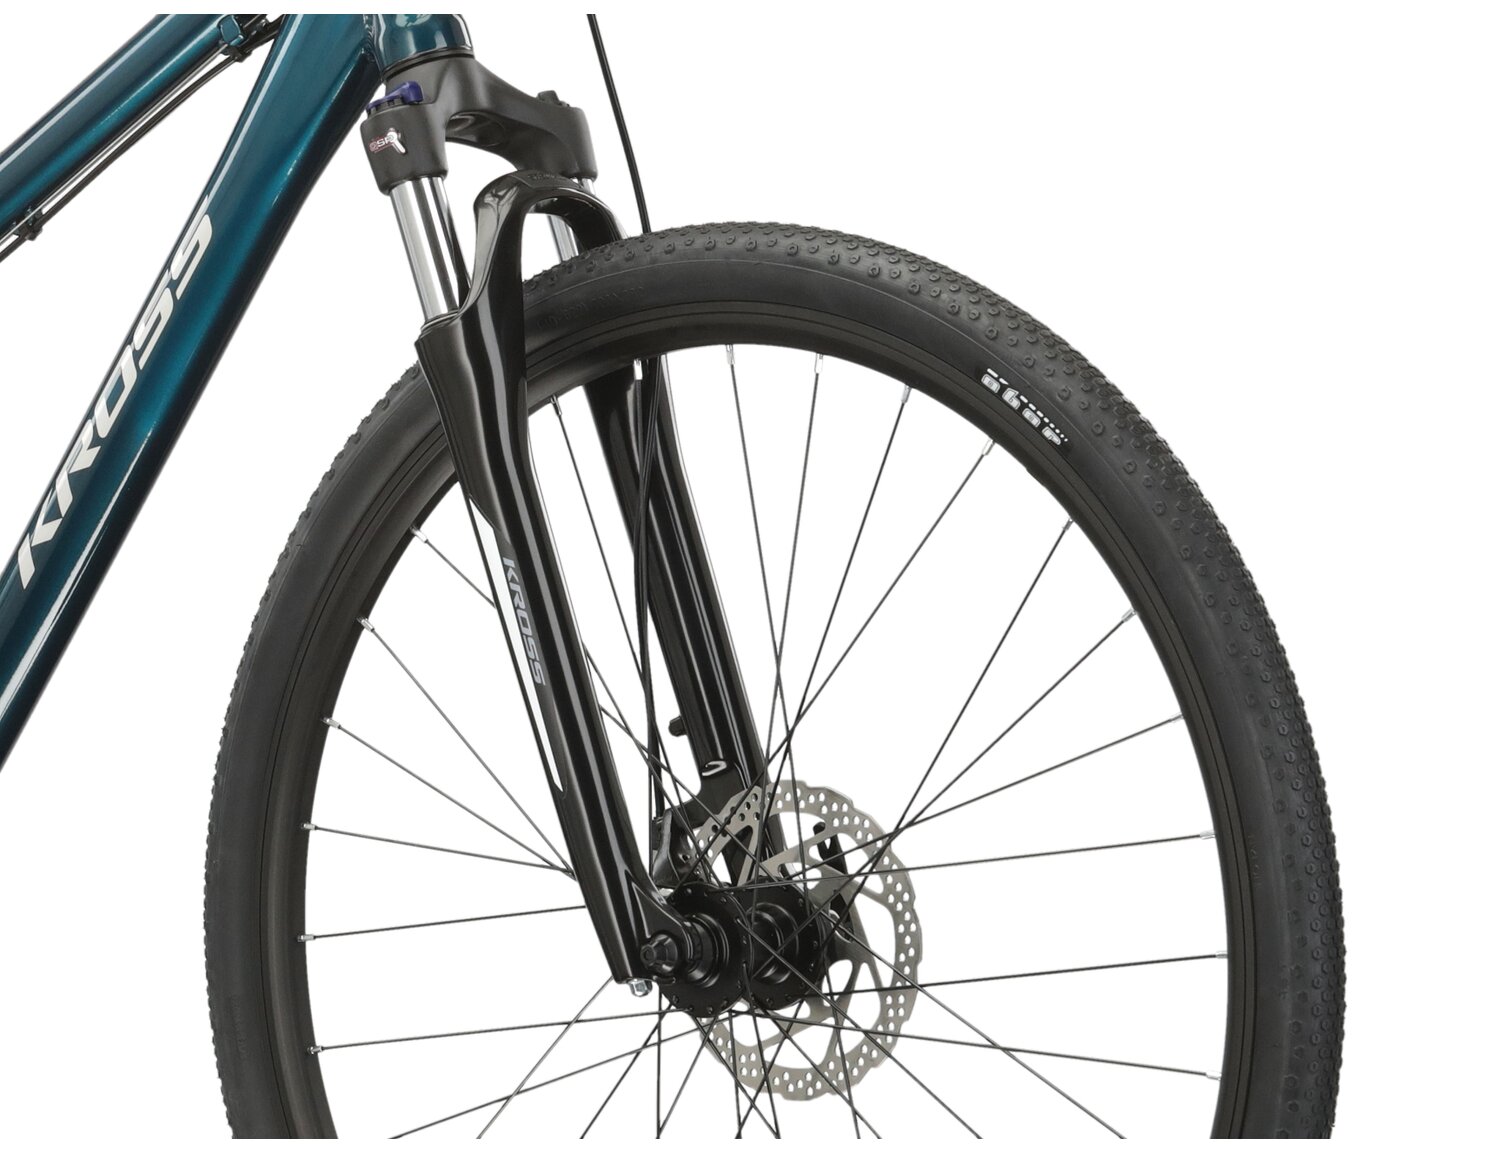 Aluminowa rama, amortyzowany widelec SR SUNTOUR NEX oraz opony Wanda w rowerze crossowym damskim KROSS Tour 2.0 